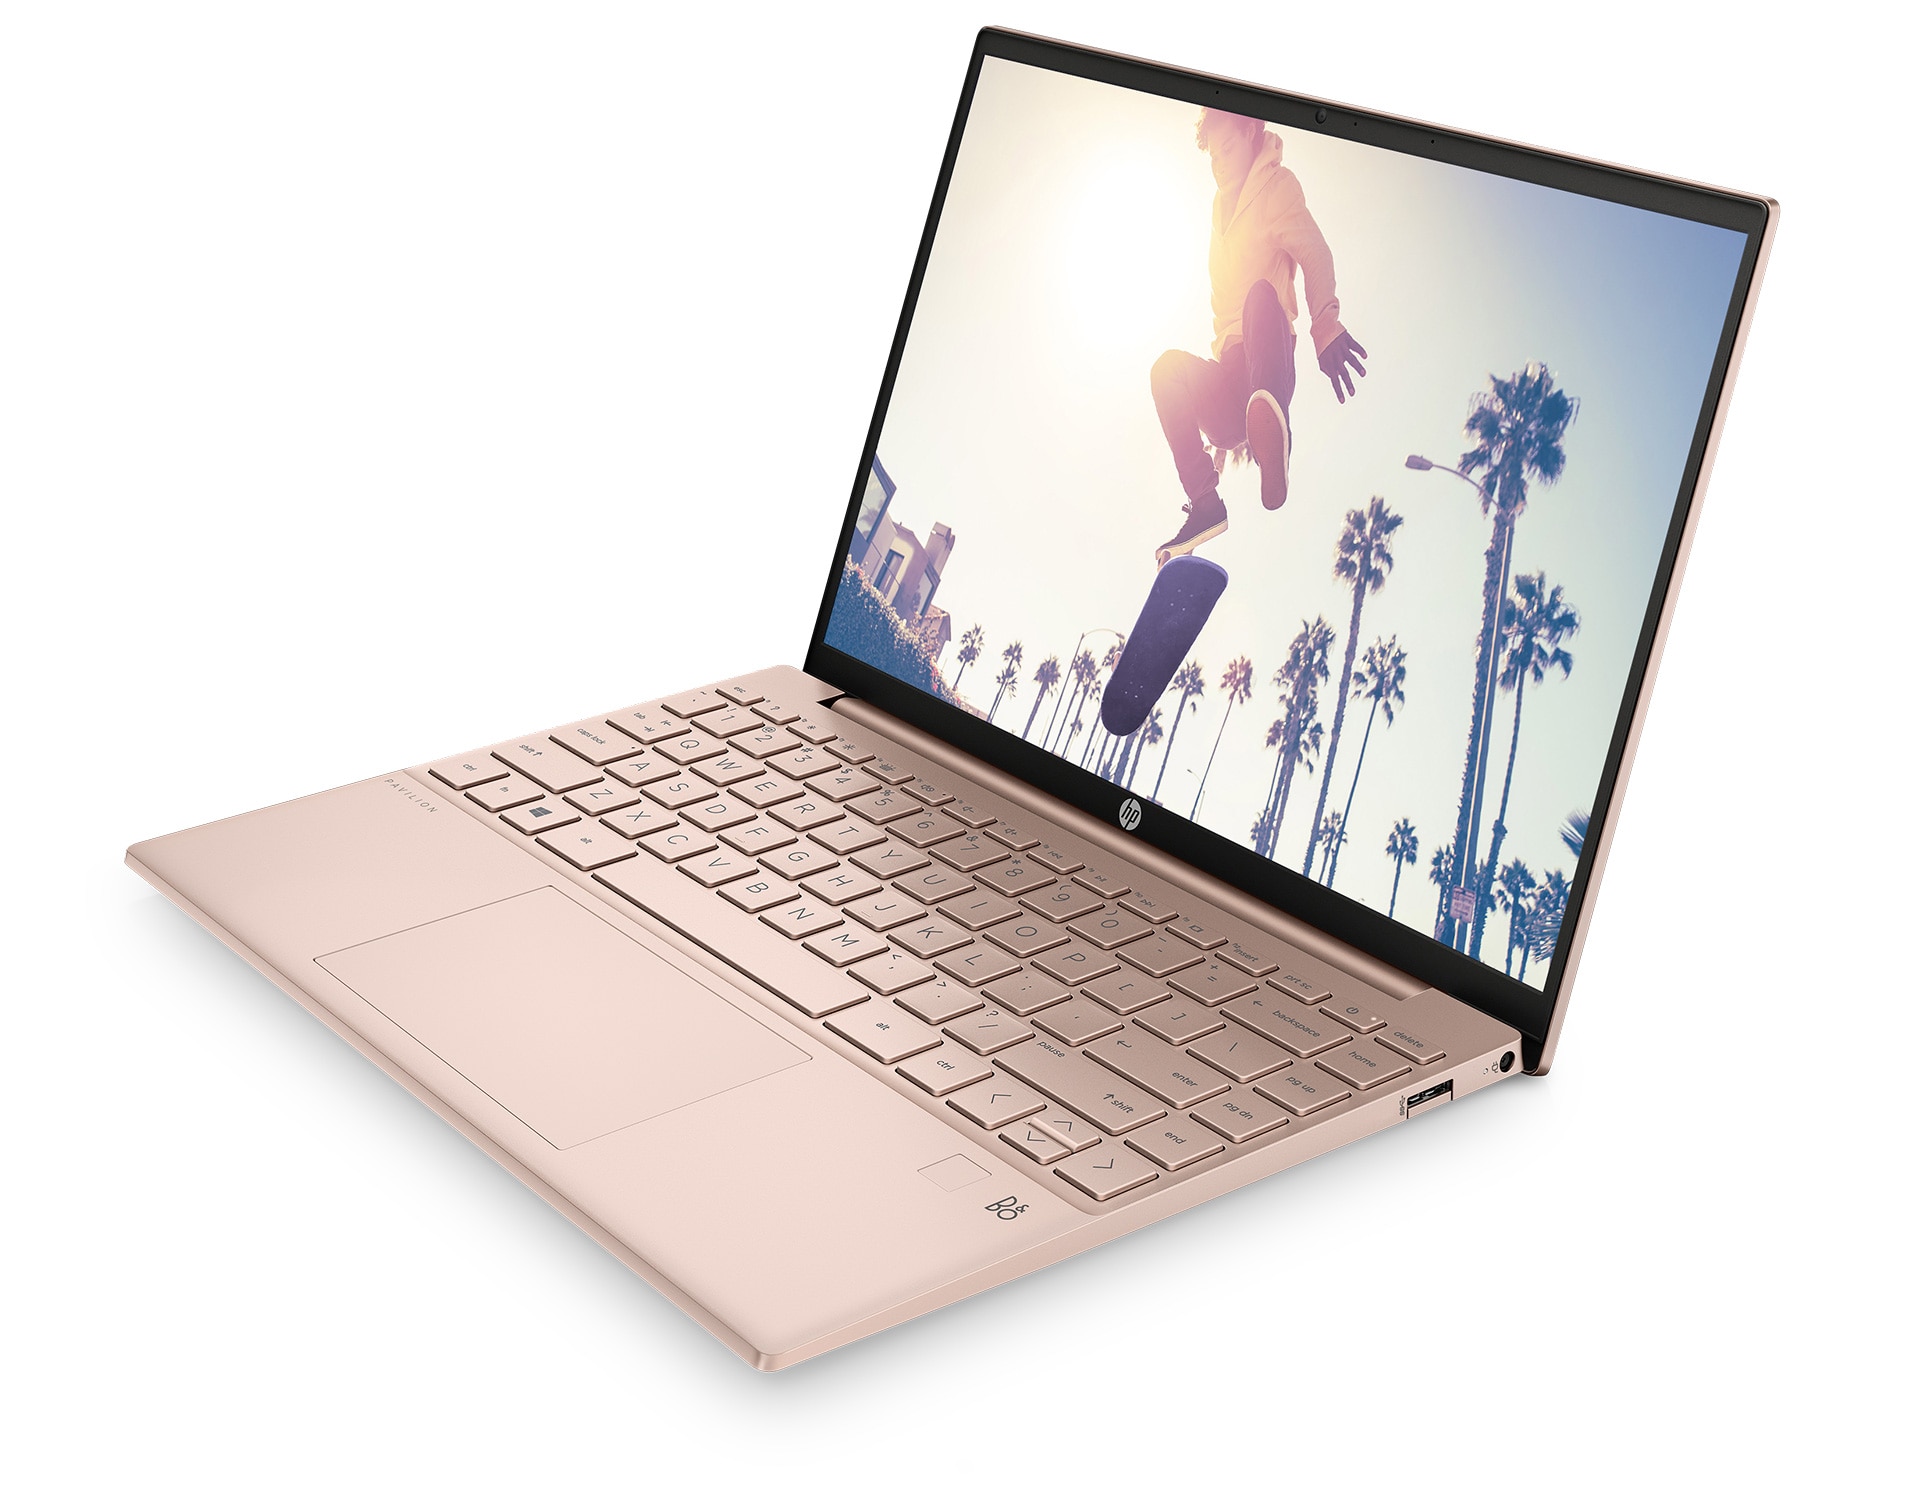 ピンク色のノートパソコンでコスパの高い商品をお探しなら、日本HP製の 